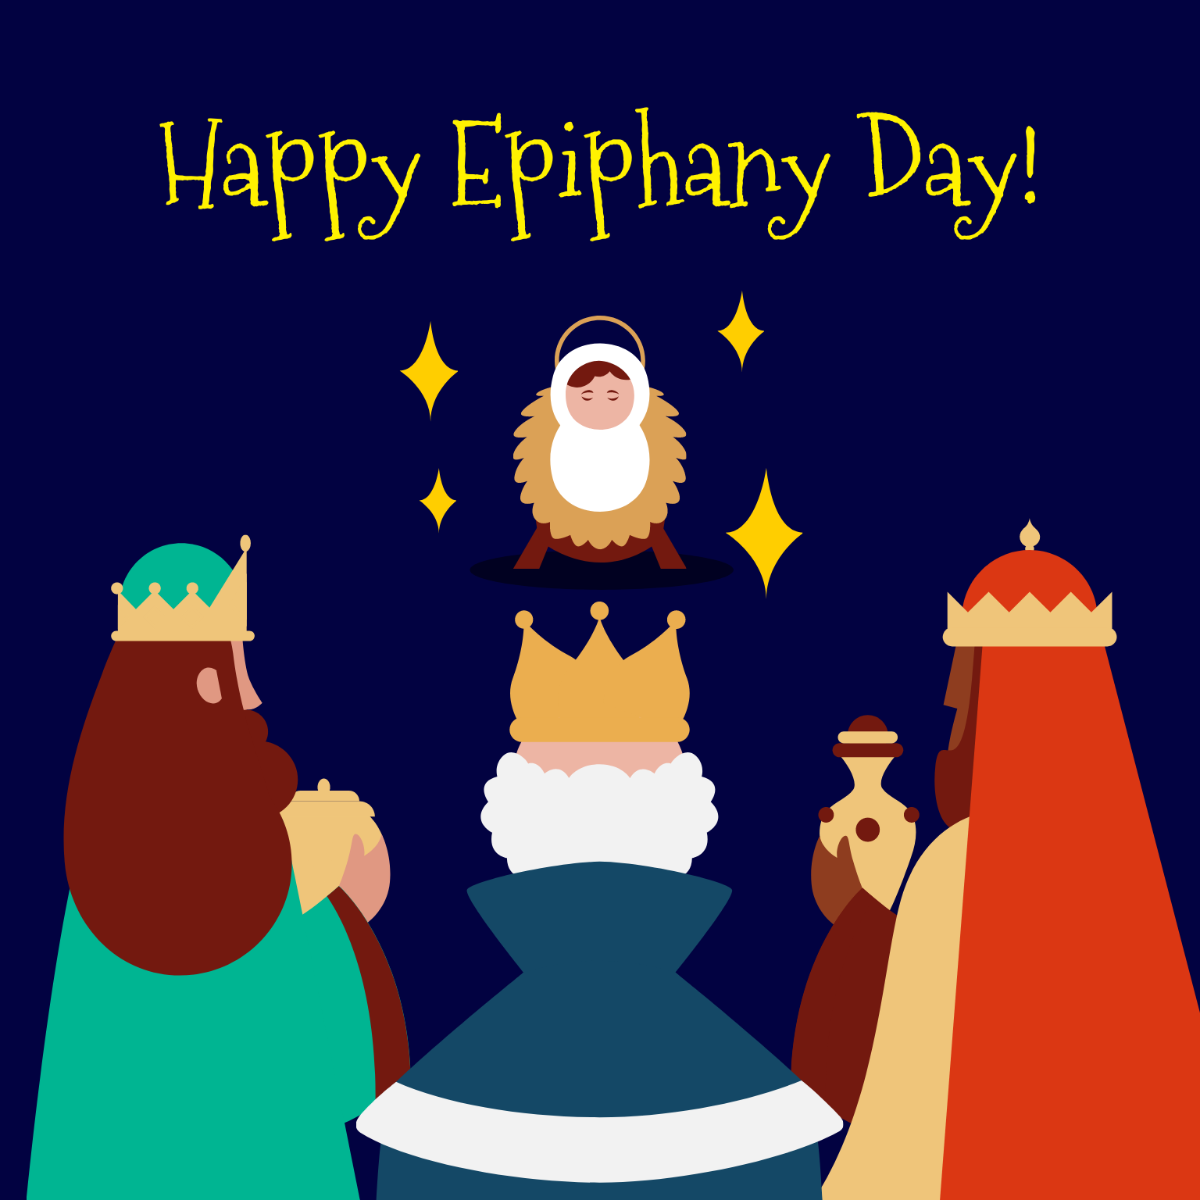 Happy Epiphany Day Vector